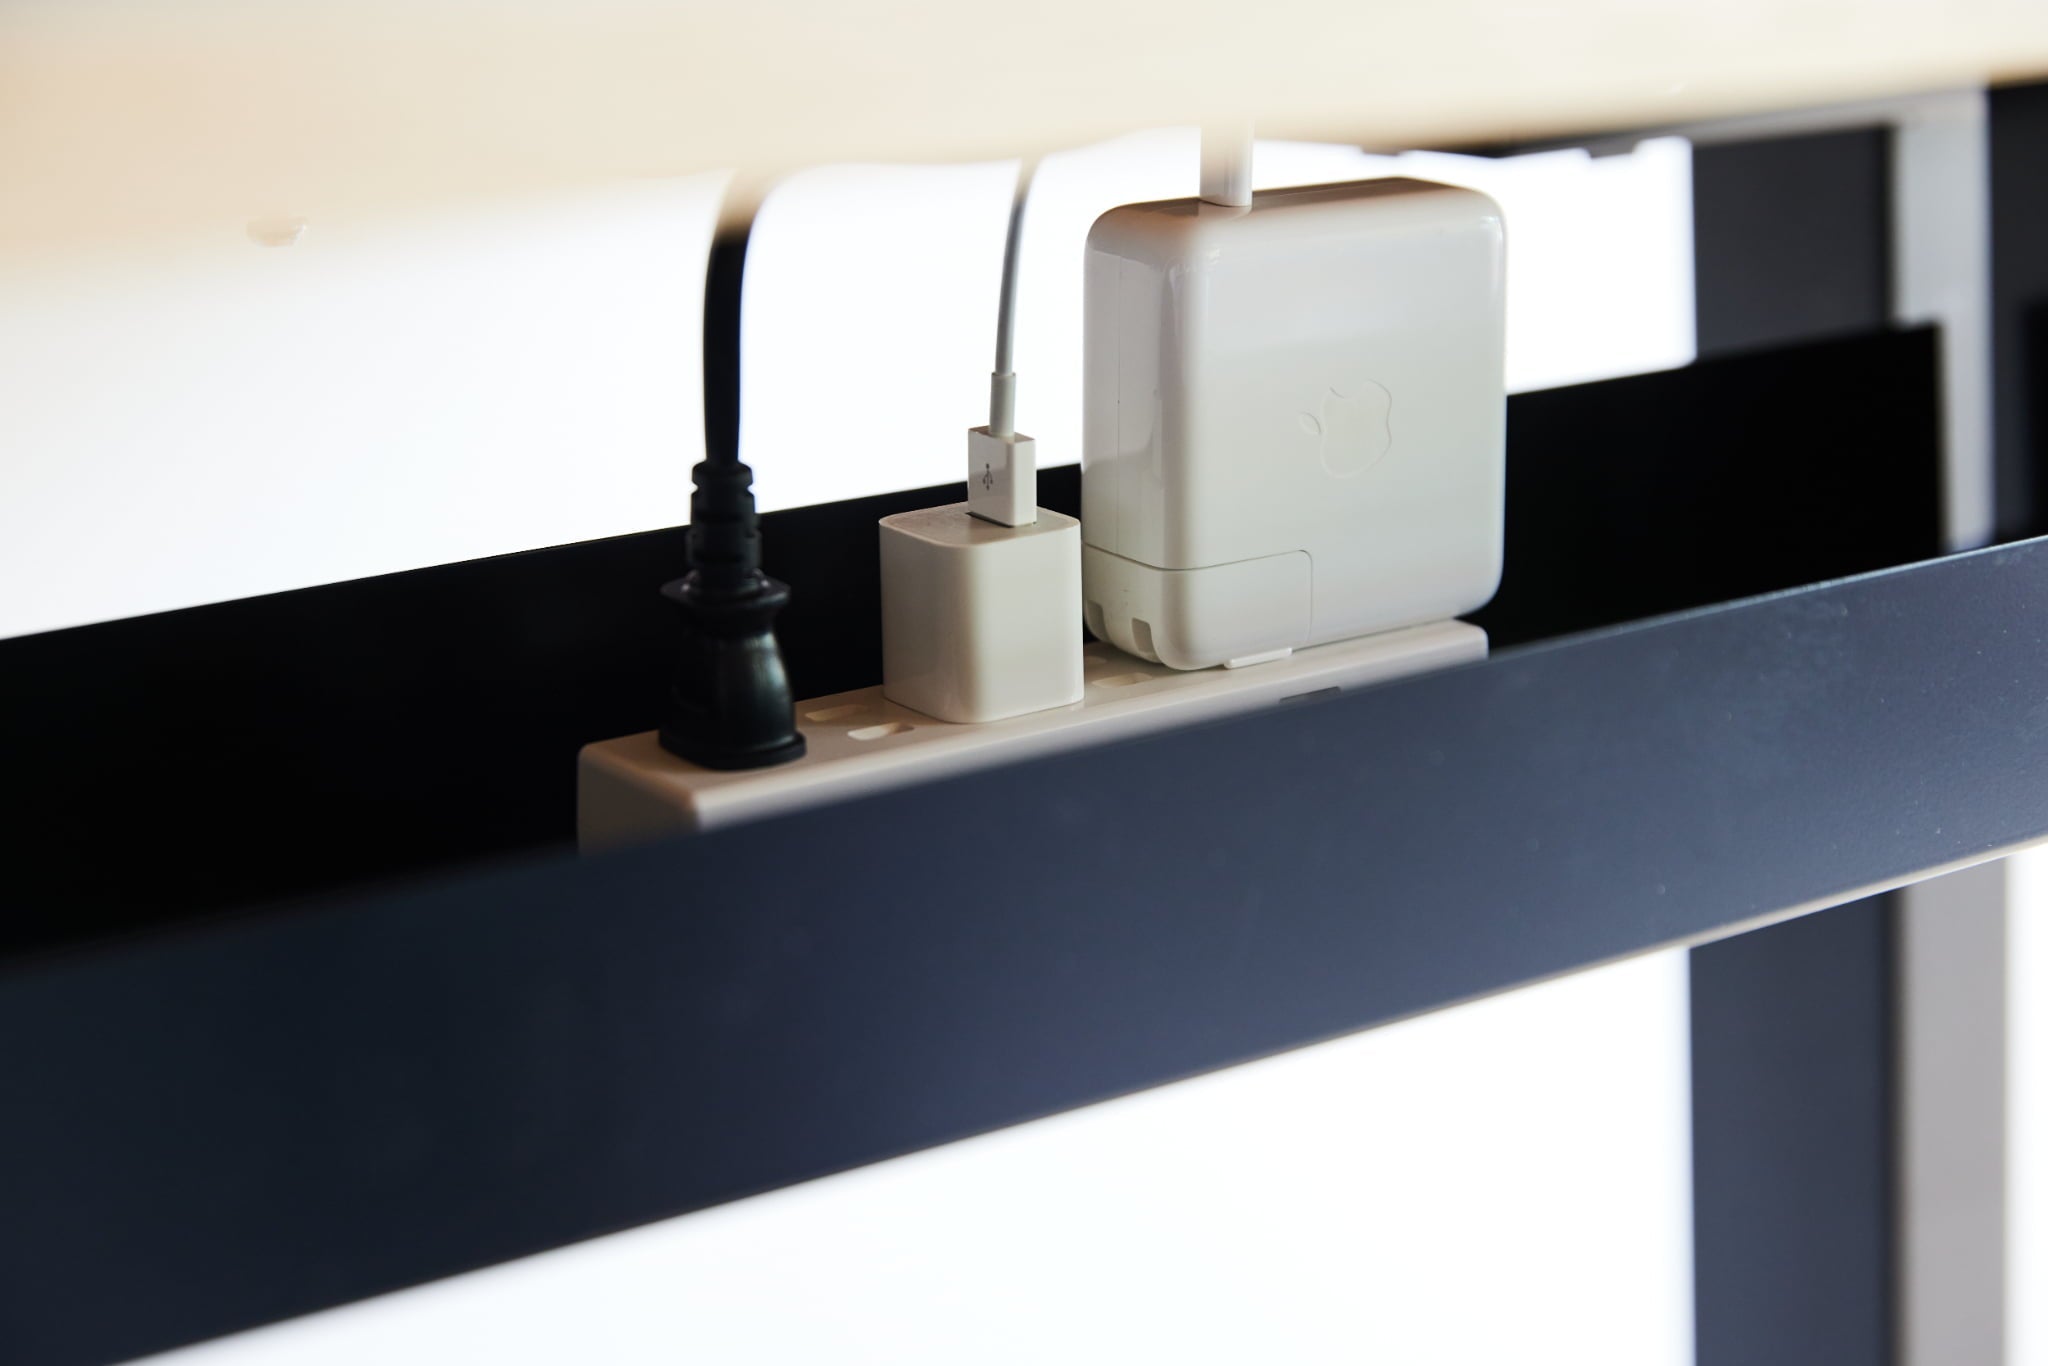 WAAKstanding［無垢材を贅沢に使用した電動昇降デスク］は天板の下に取り付けることで電源タップなどを収納することができる配線トレーを取り付けることで配線を美しく整理することができます。